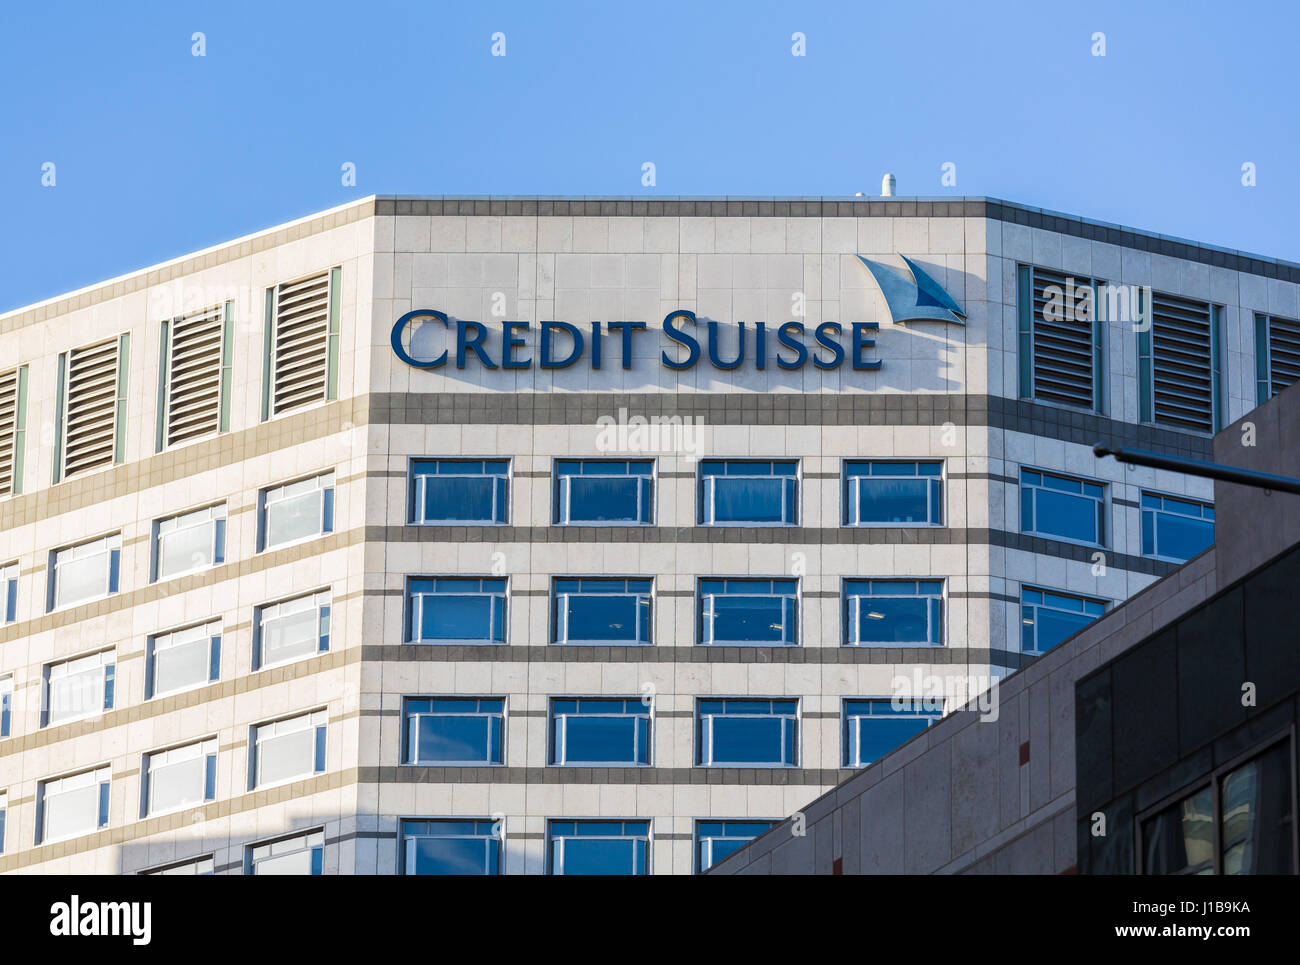 Le logo de la banque Crédit Suisse sur le côté de leur immeuble de bureaux à Canary Wharf, les Docklands, Londres, Angleterre Banque D'Images